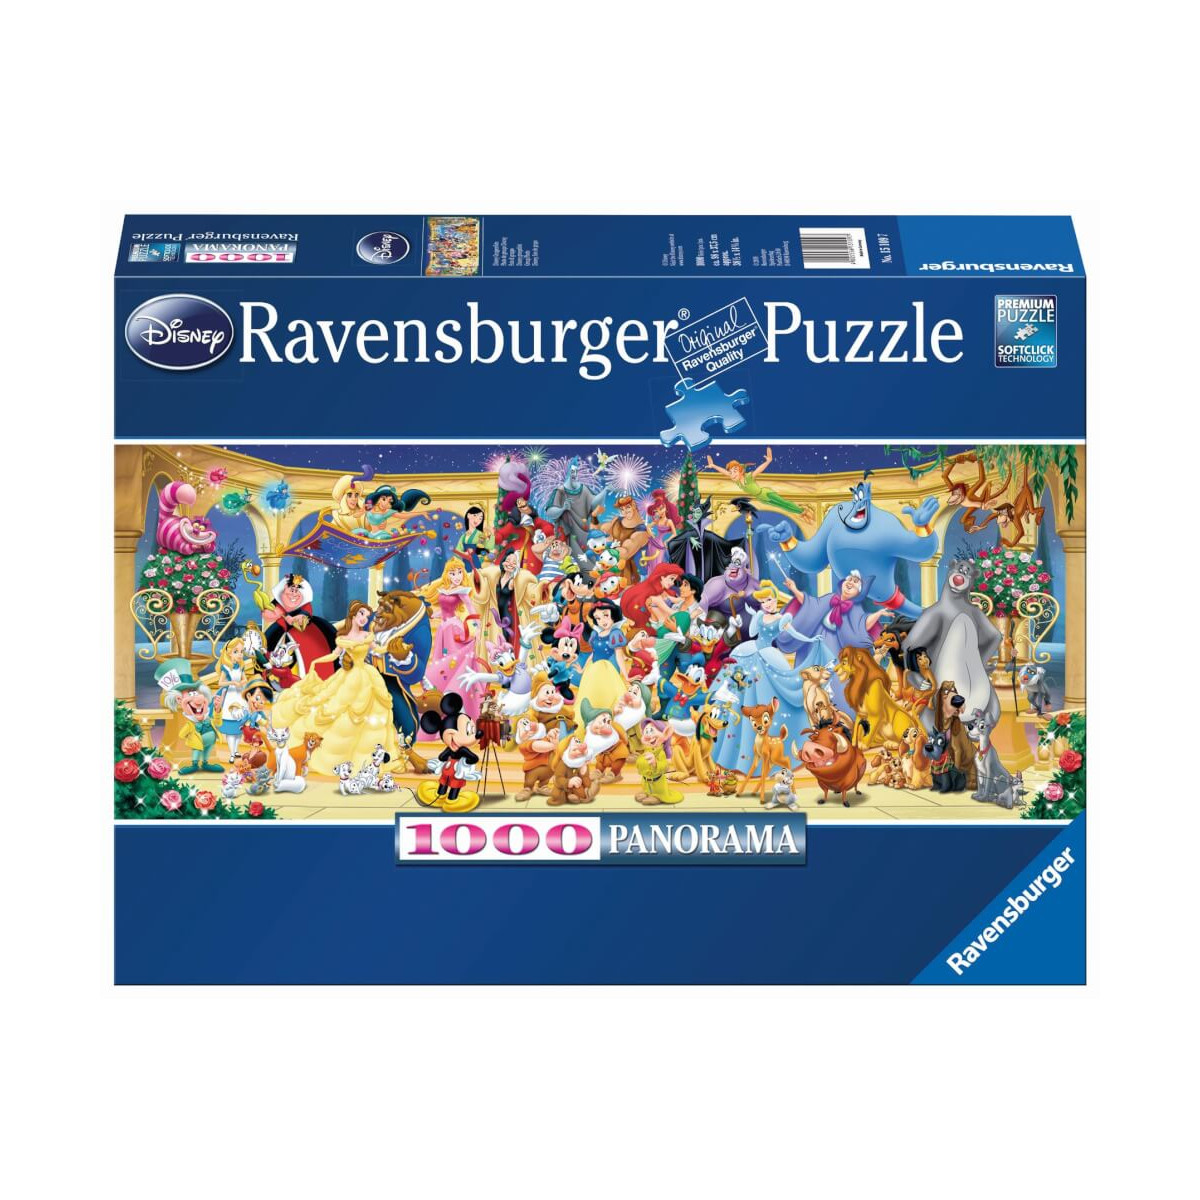 Ravensburger Puzzle 15109   Disney Gruppenfoto   1000 Teile Disney Puzzle für Erwachsene und Kinder